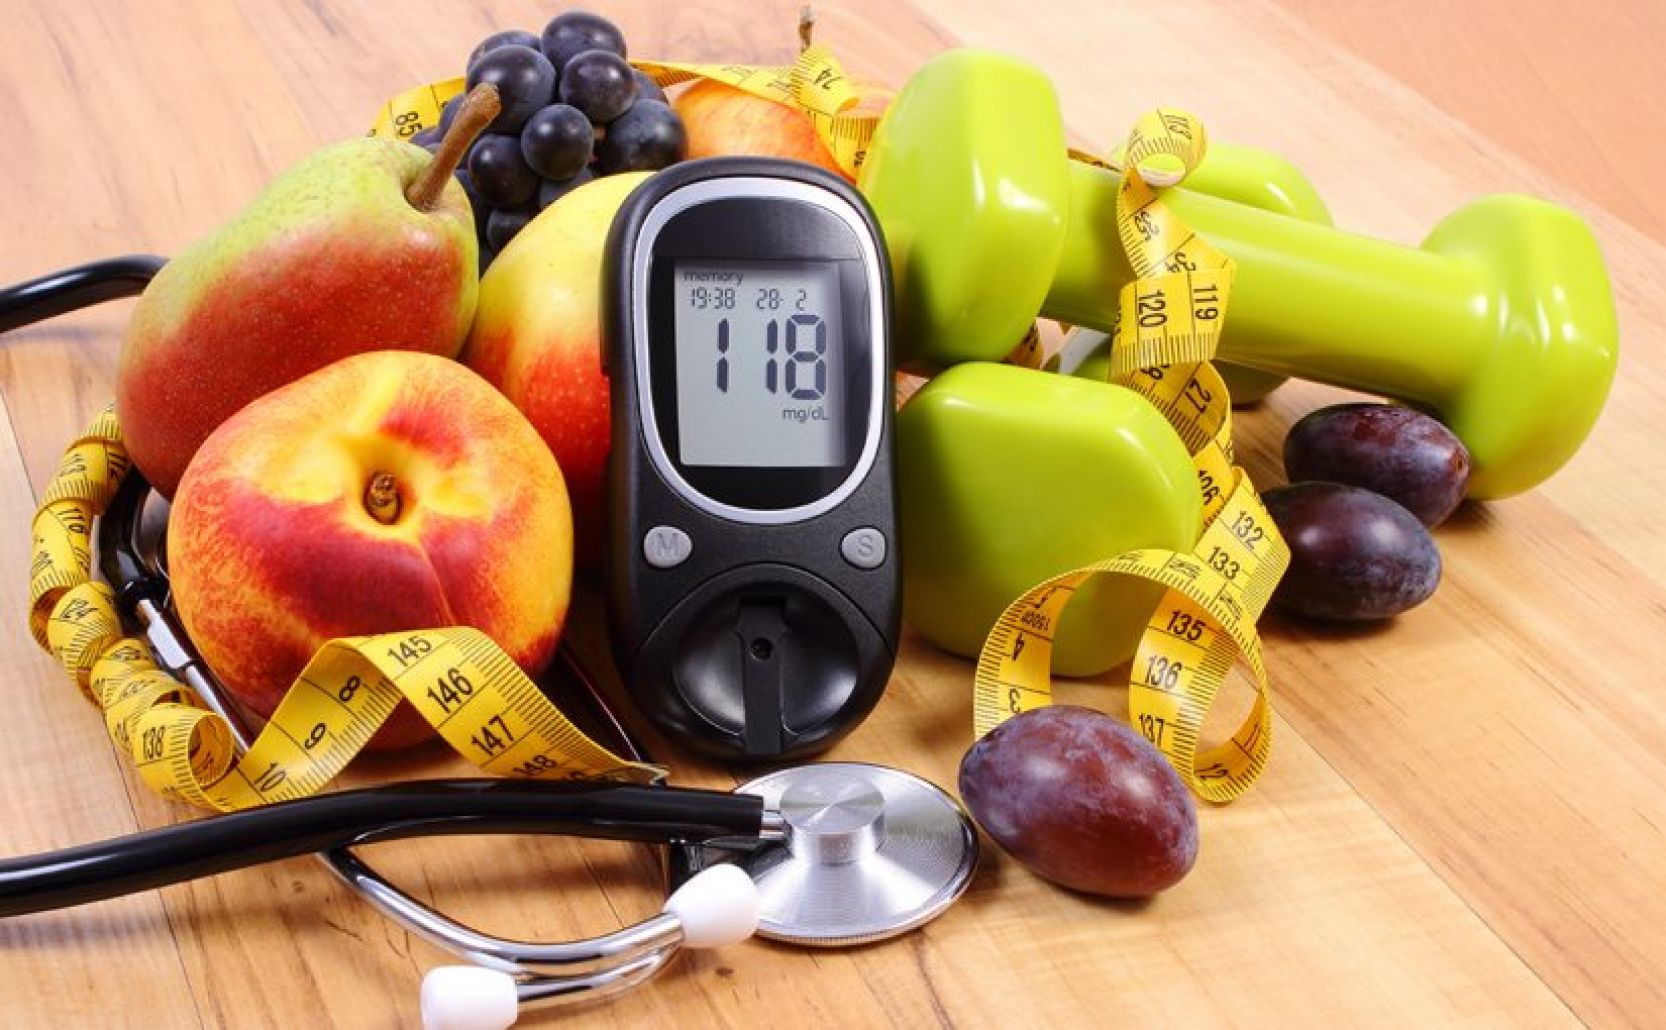 احرص على تناولها ..  الفاكهة المعجزة تعوض الأنسولين وتخفض نسبة السكر في الدم  - تعرف عليها؟ 